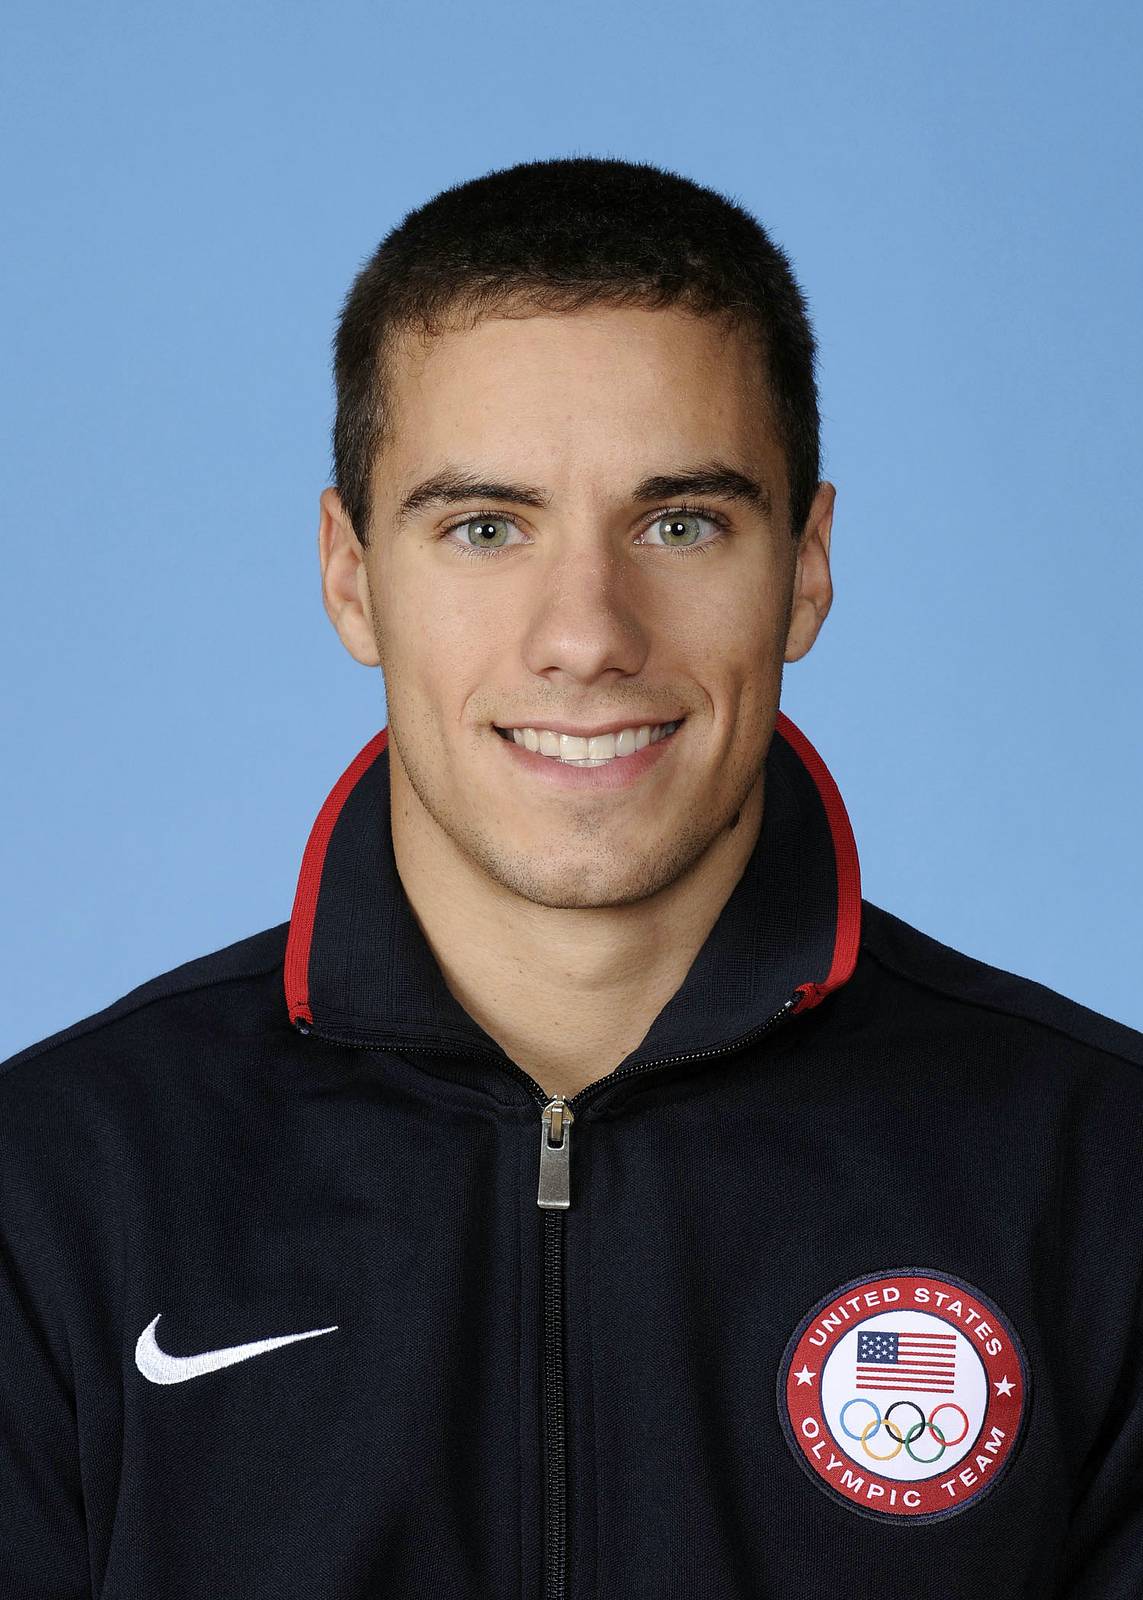 SR: USA: Olympian Jake Dalton